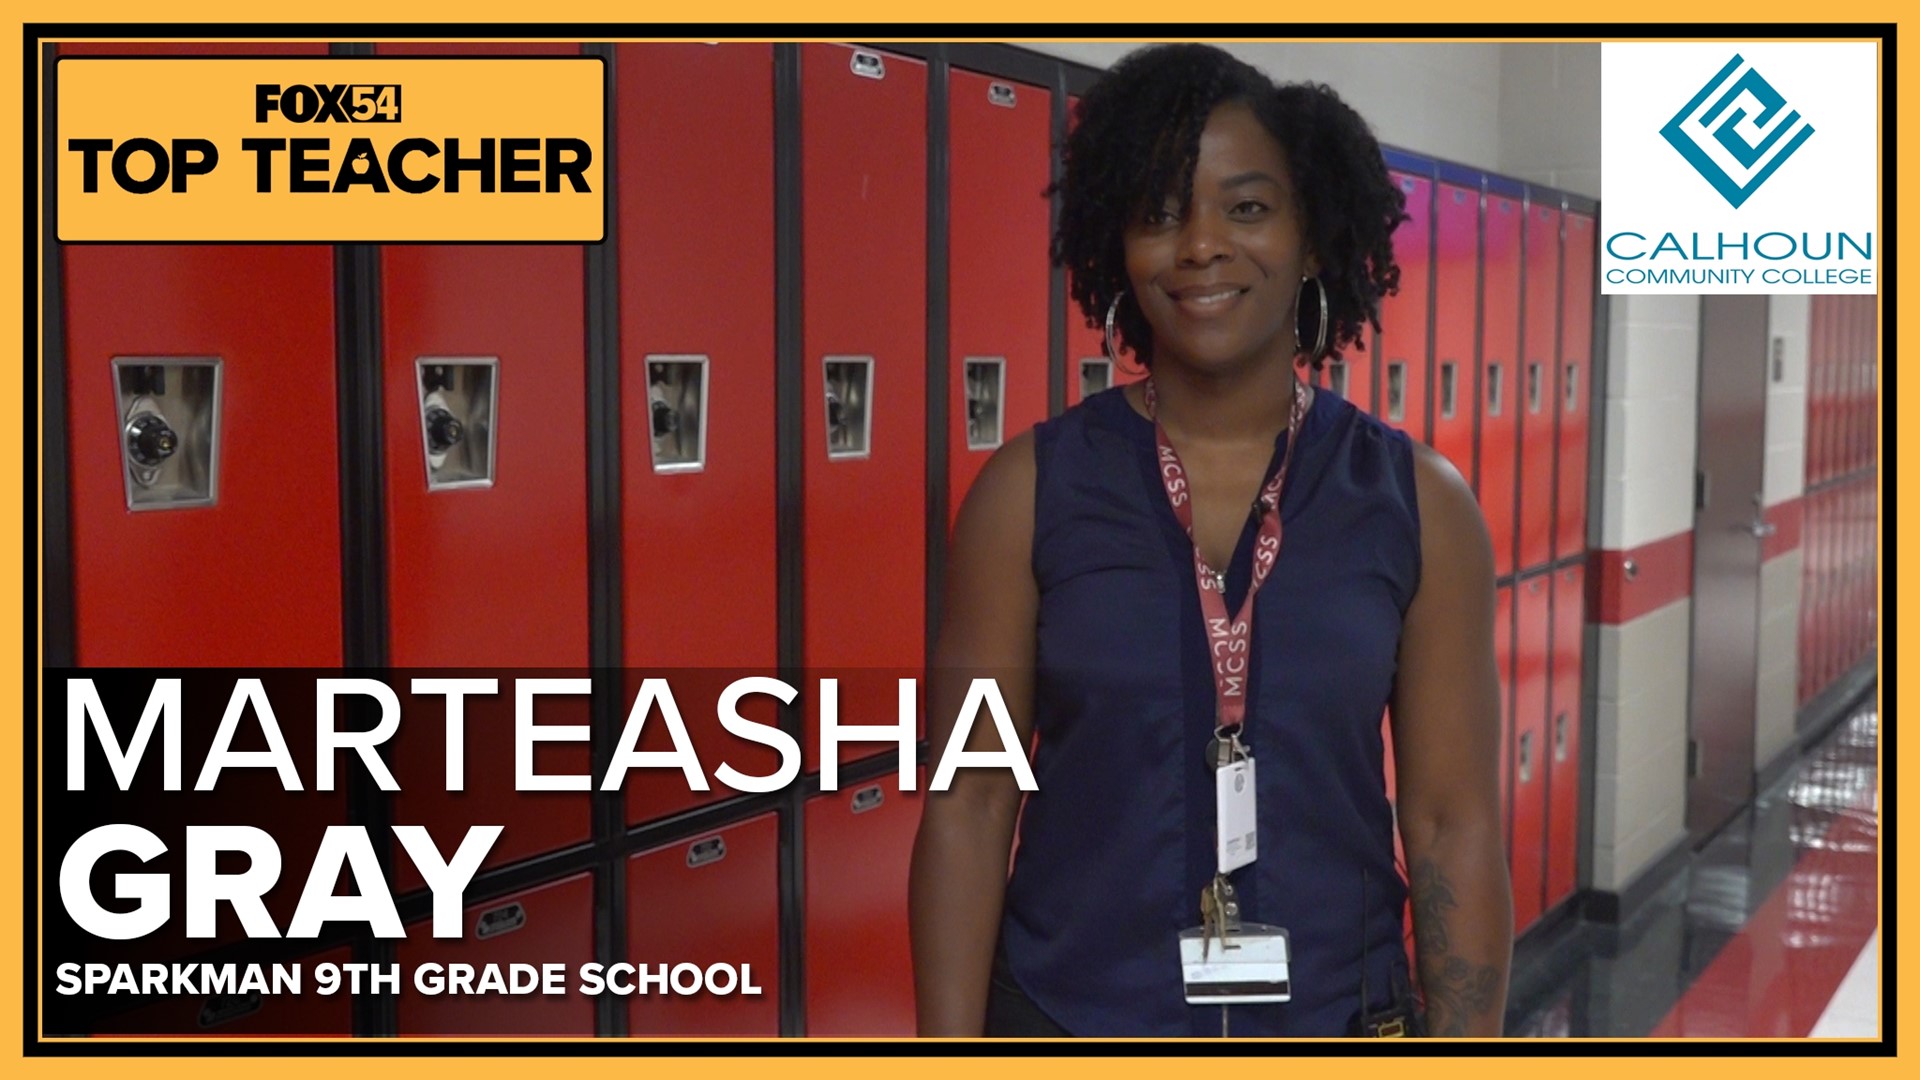 This week's top teacher is a geometry teacher from Sparkman Ninth Grade School